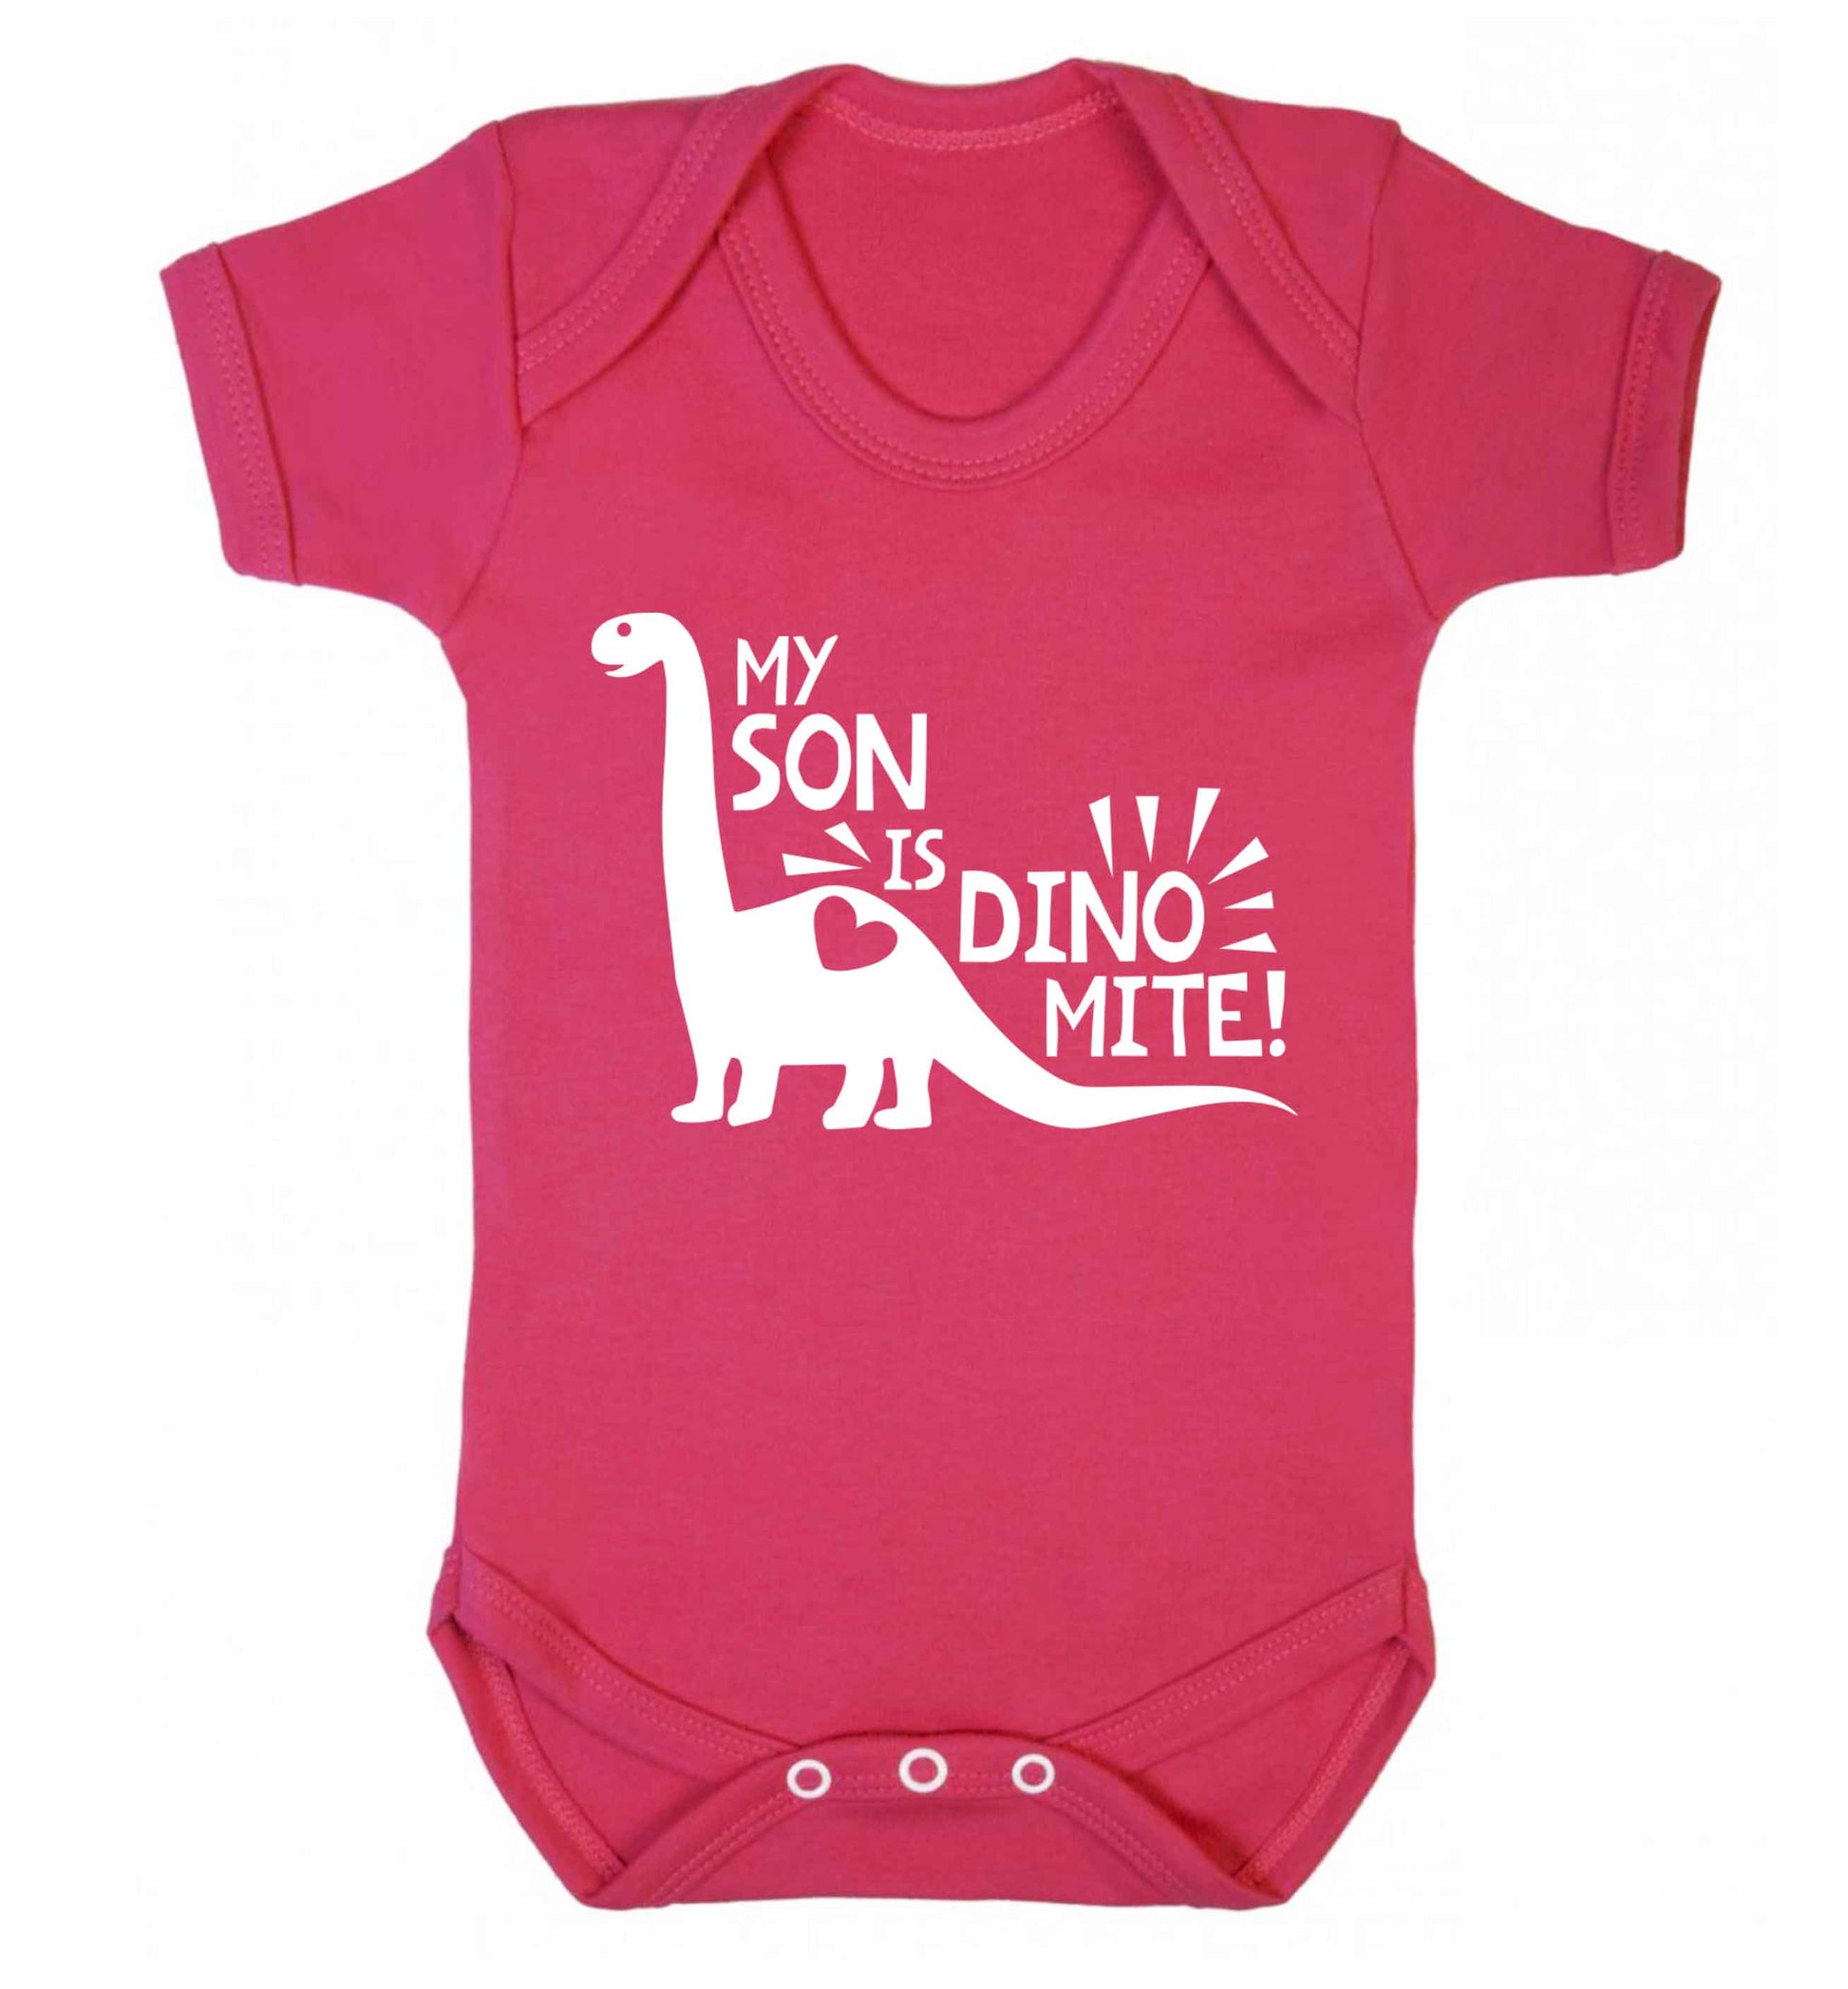 My son is dinomite! Baby Vest dark pink 18-24 months